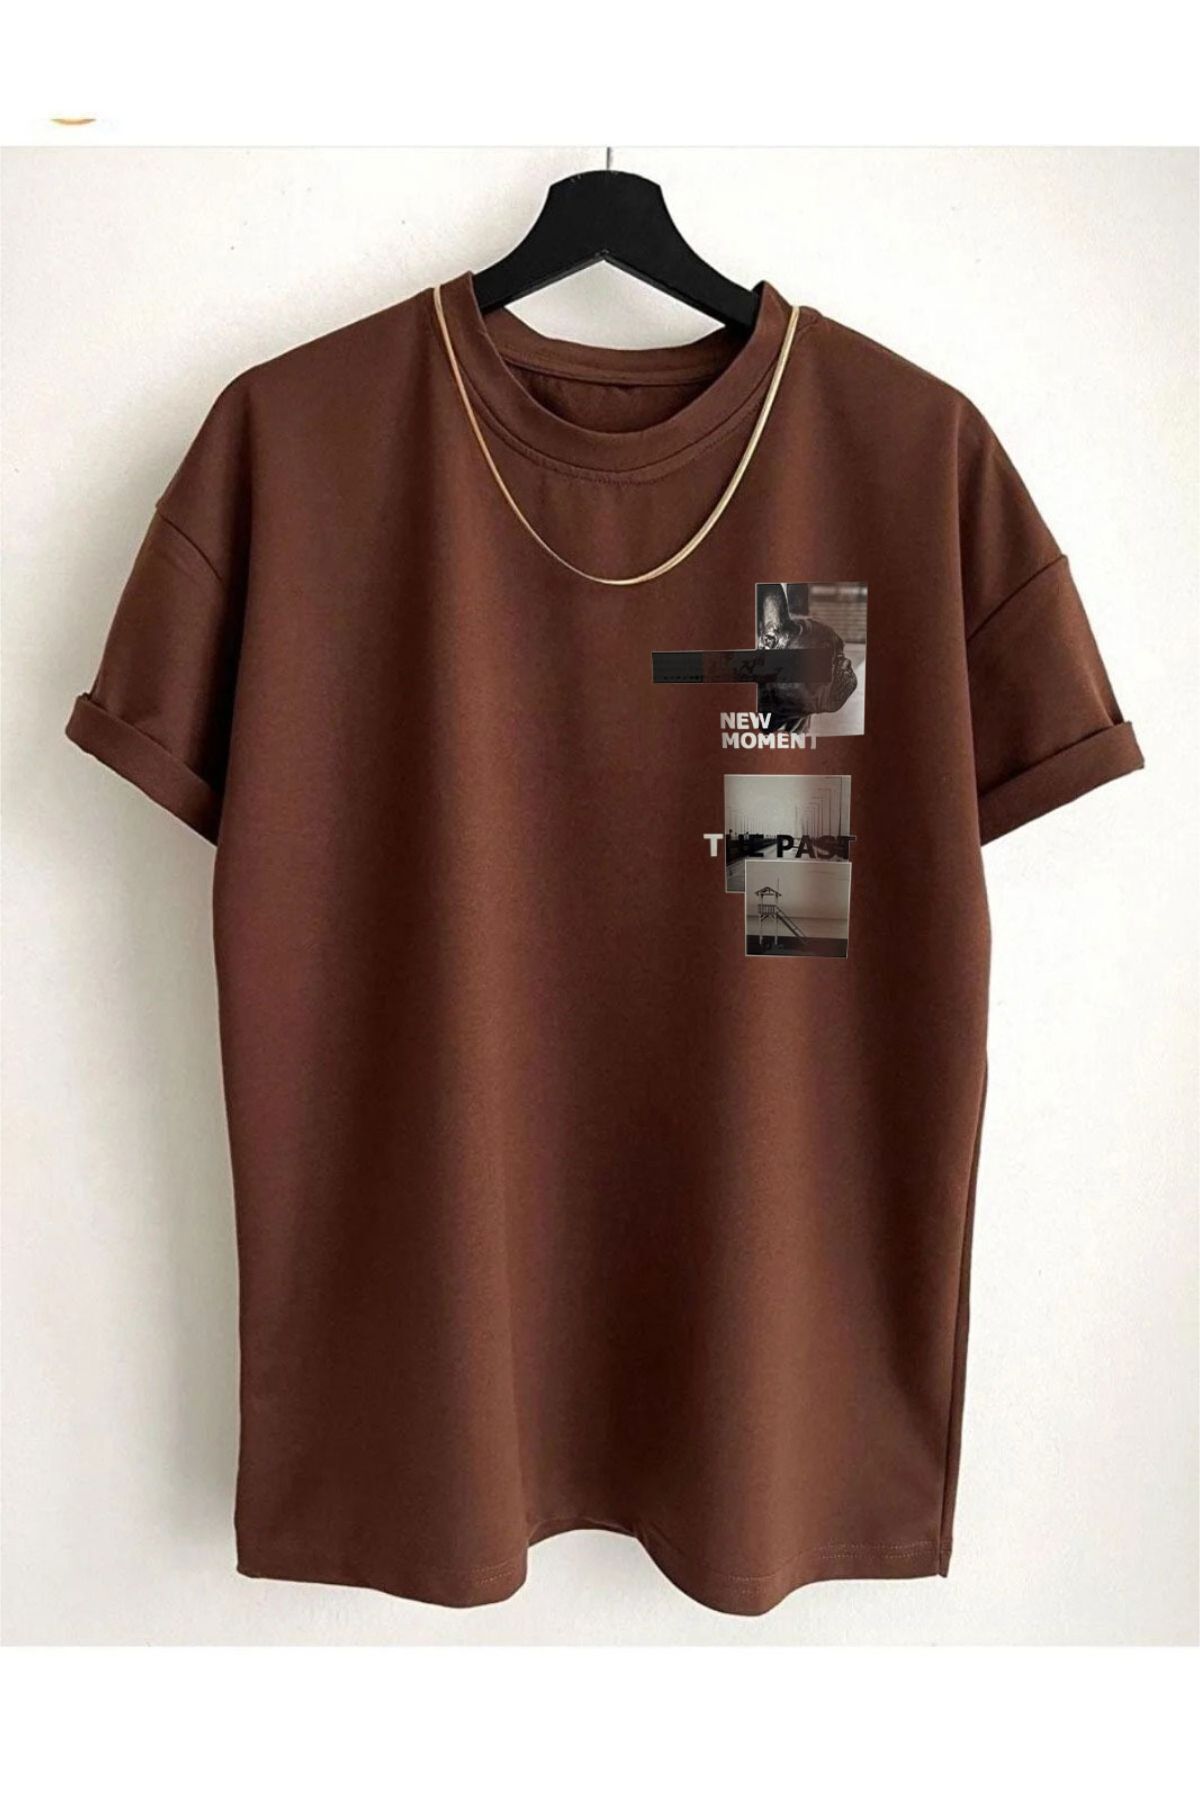 Altamira Unisex Kahverengi New Moment Baskılı Oversize T-shirt